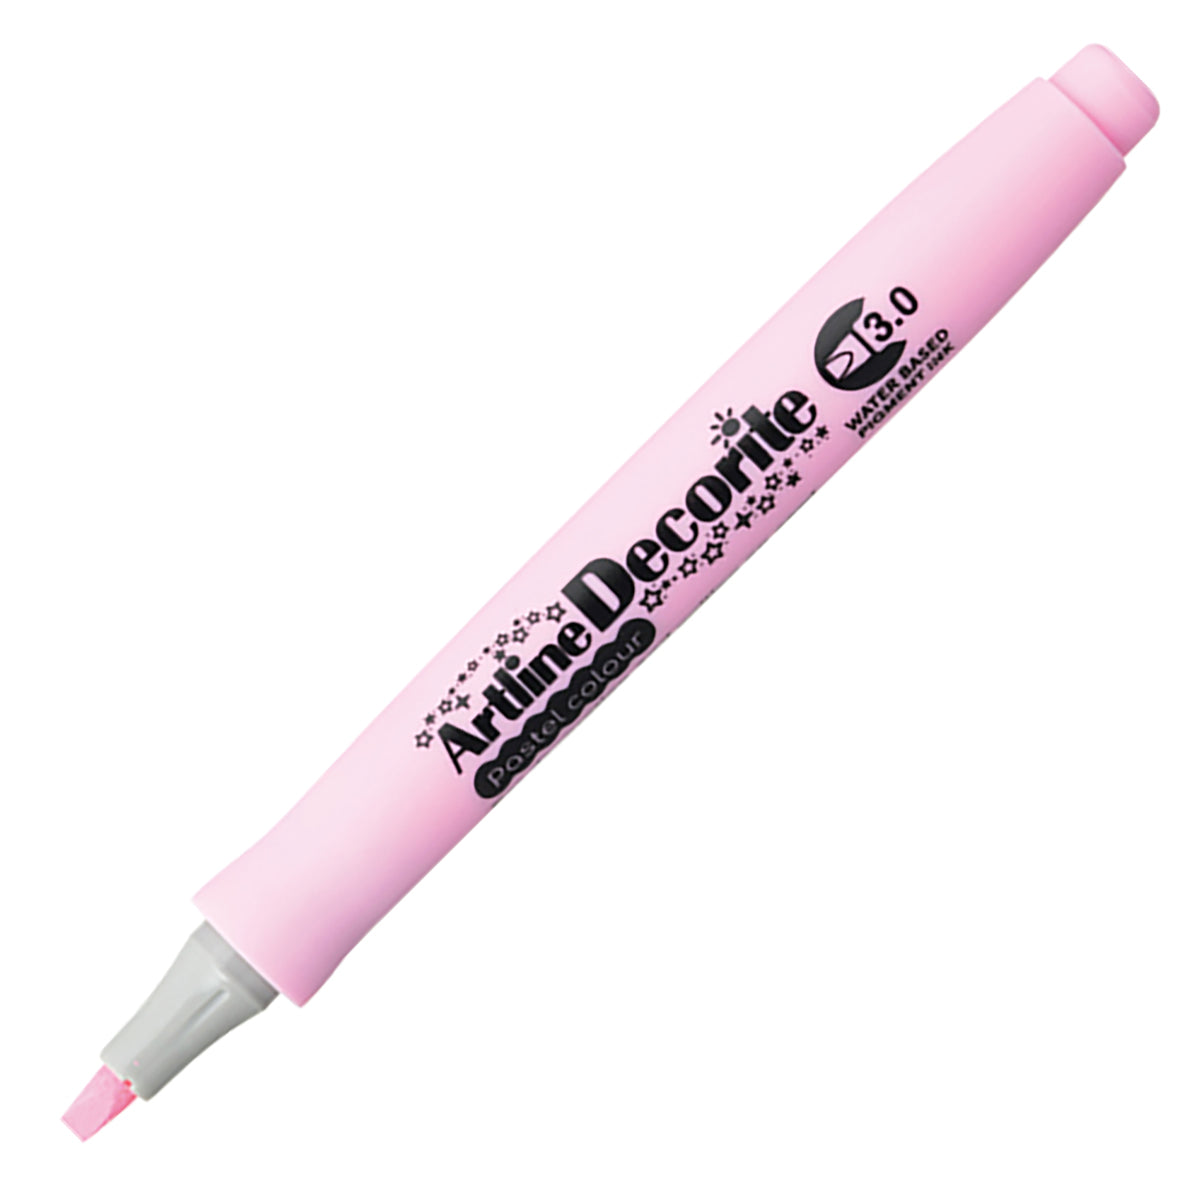 ARTLINE Decorite 3.0mm-Pastel Pink